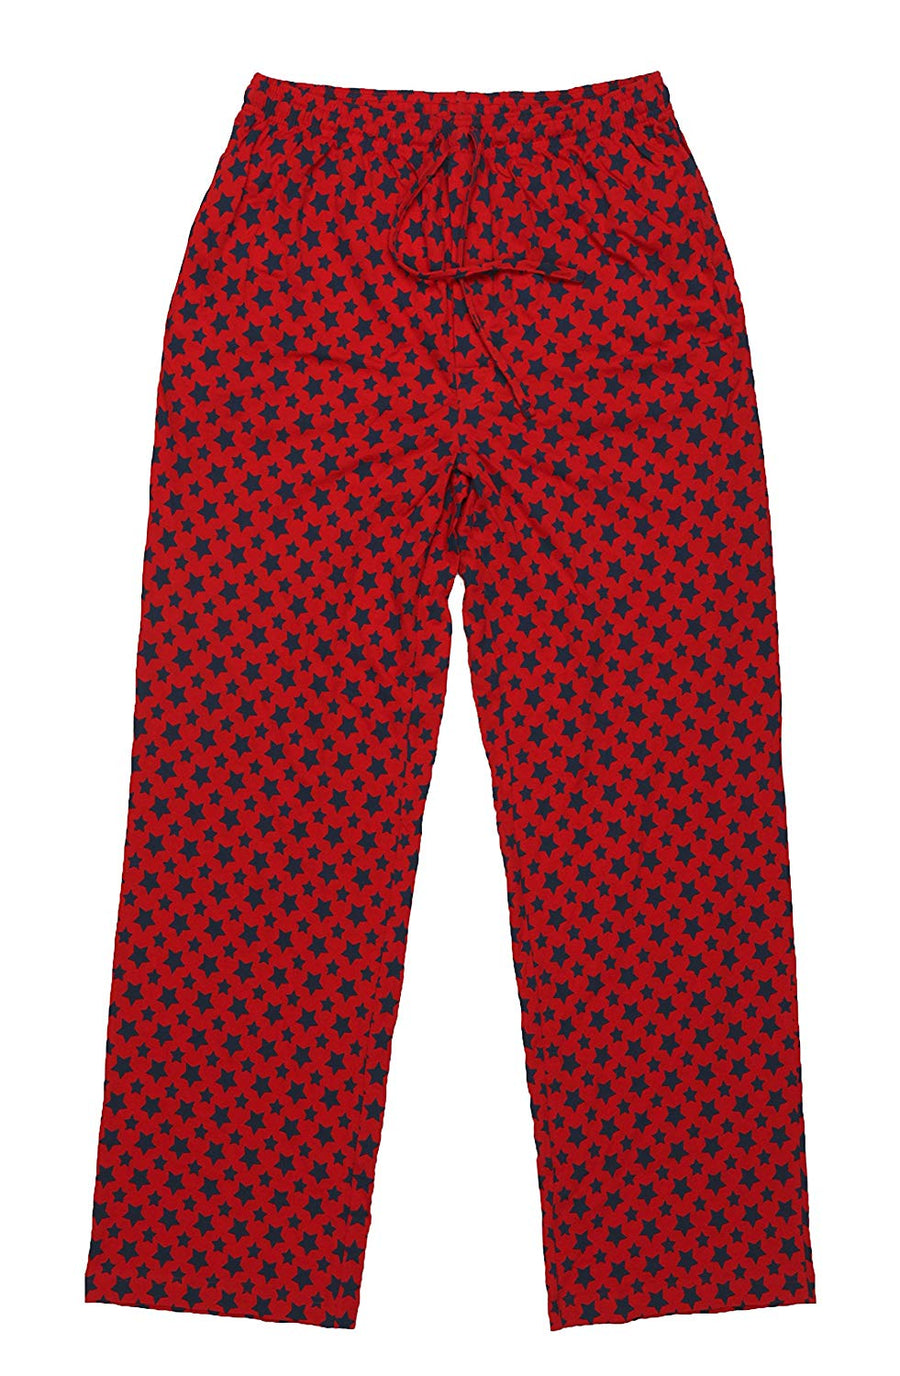 CYZ Women's Cotton Stretch Knit Pajamas Jogger Pants/Lounge Pants – CYZ  Collection